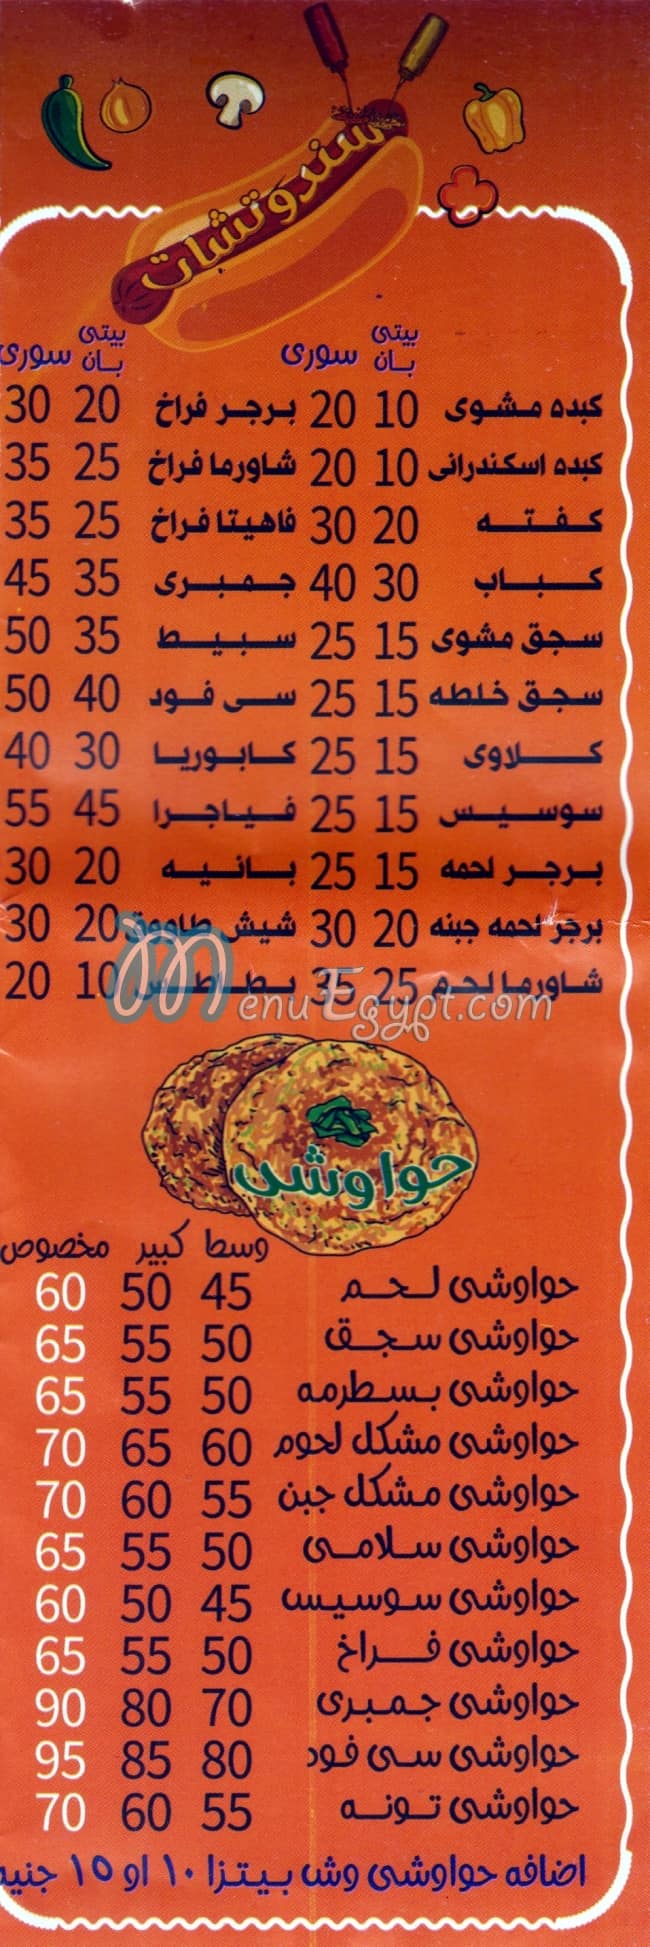 Pizza Roma menu Egypt